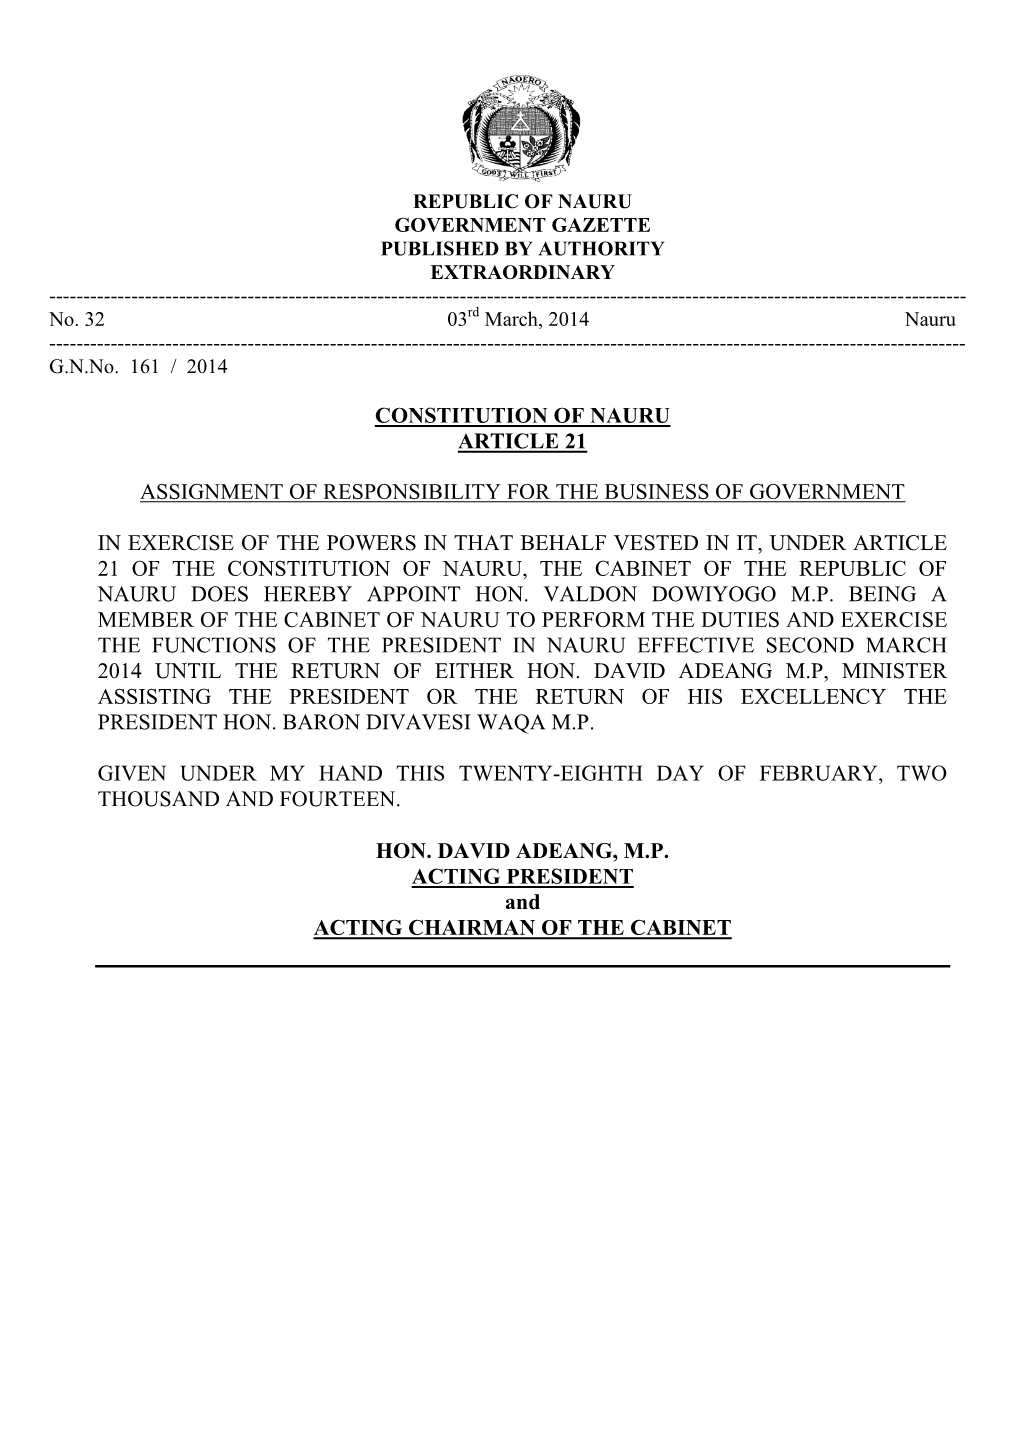 Constitution of Nauru Article 21 Assignment Of